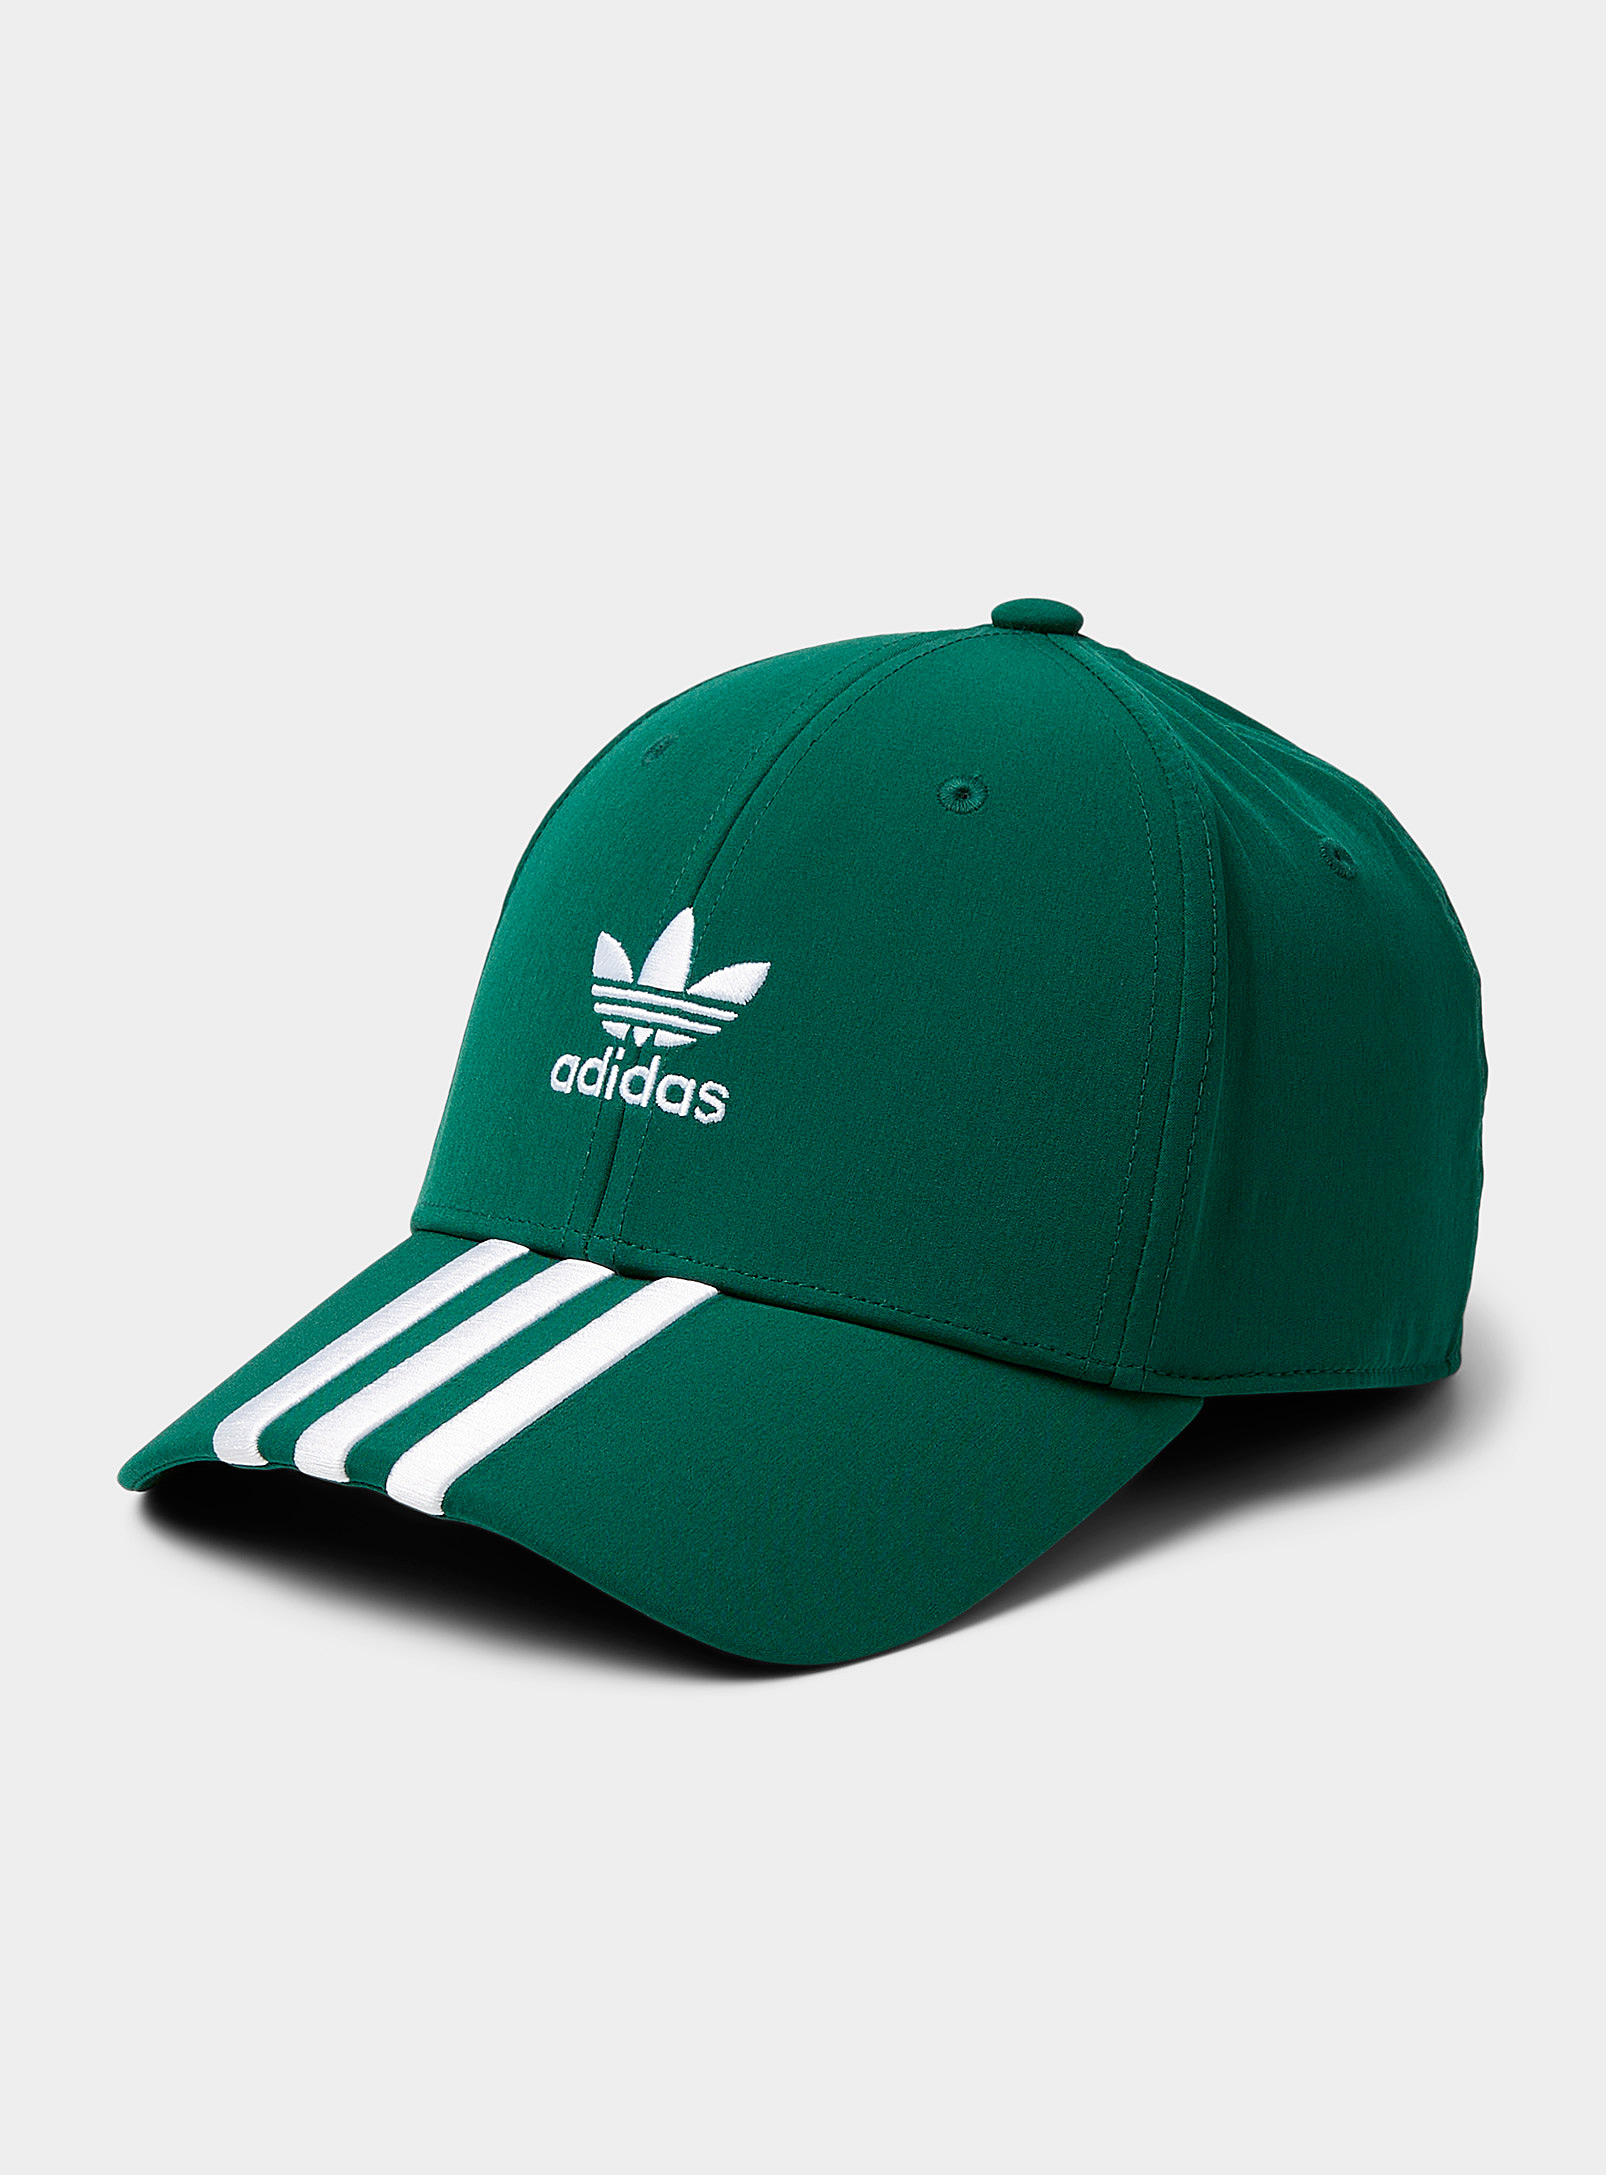 Adidas Originals Collegiate Green Adi Dassler Cap